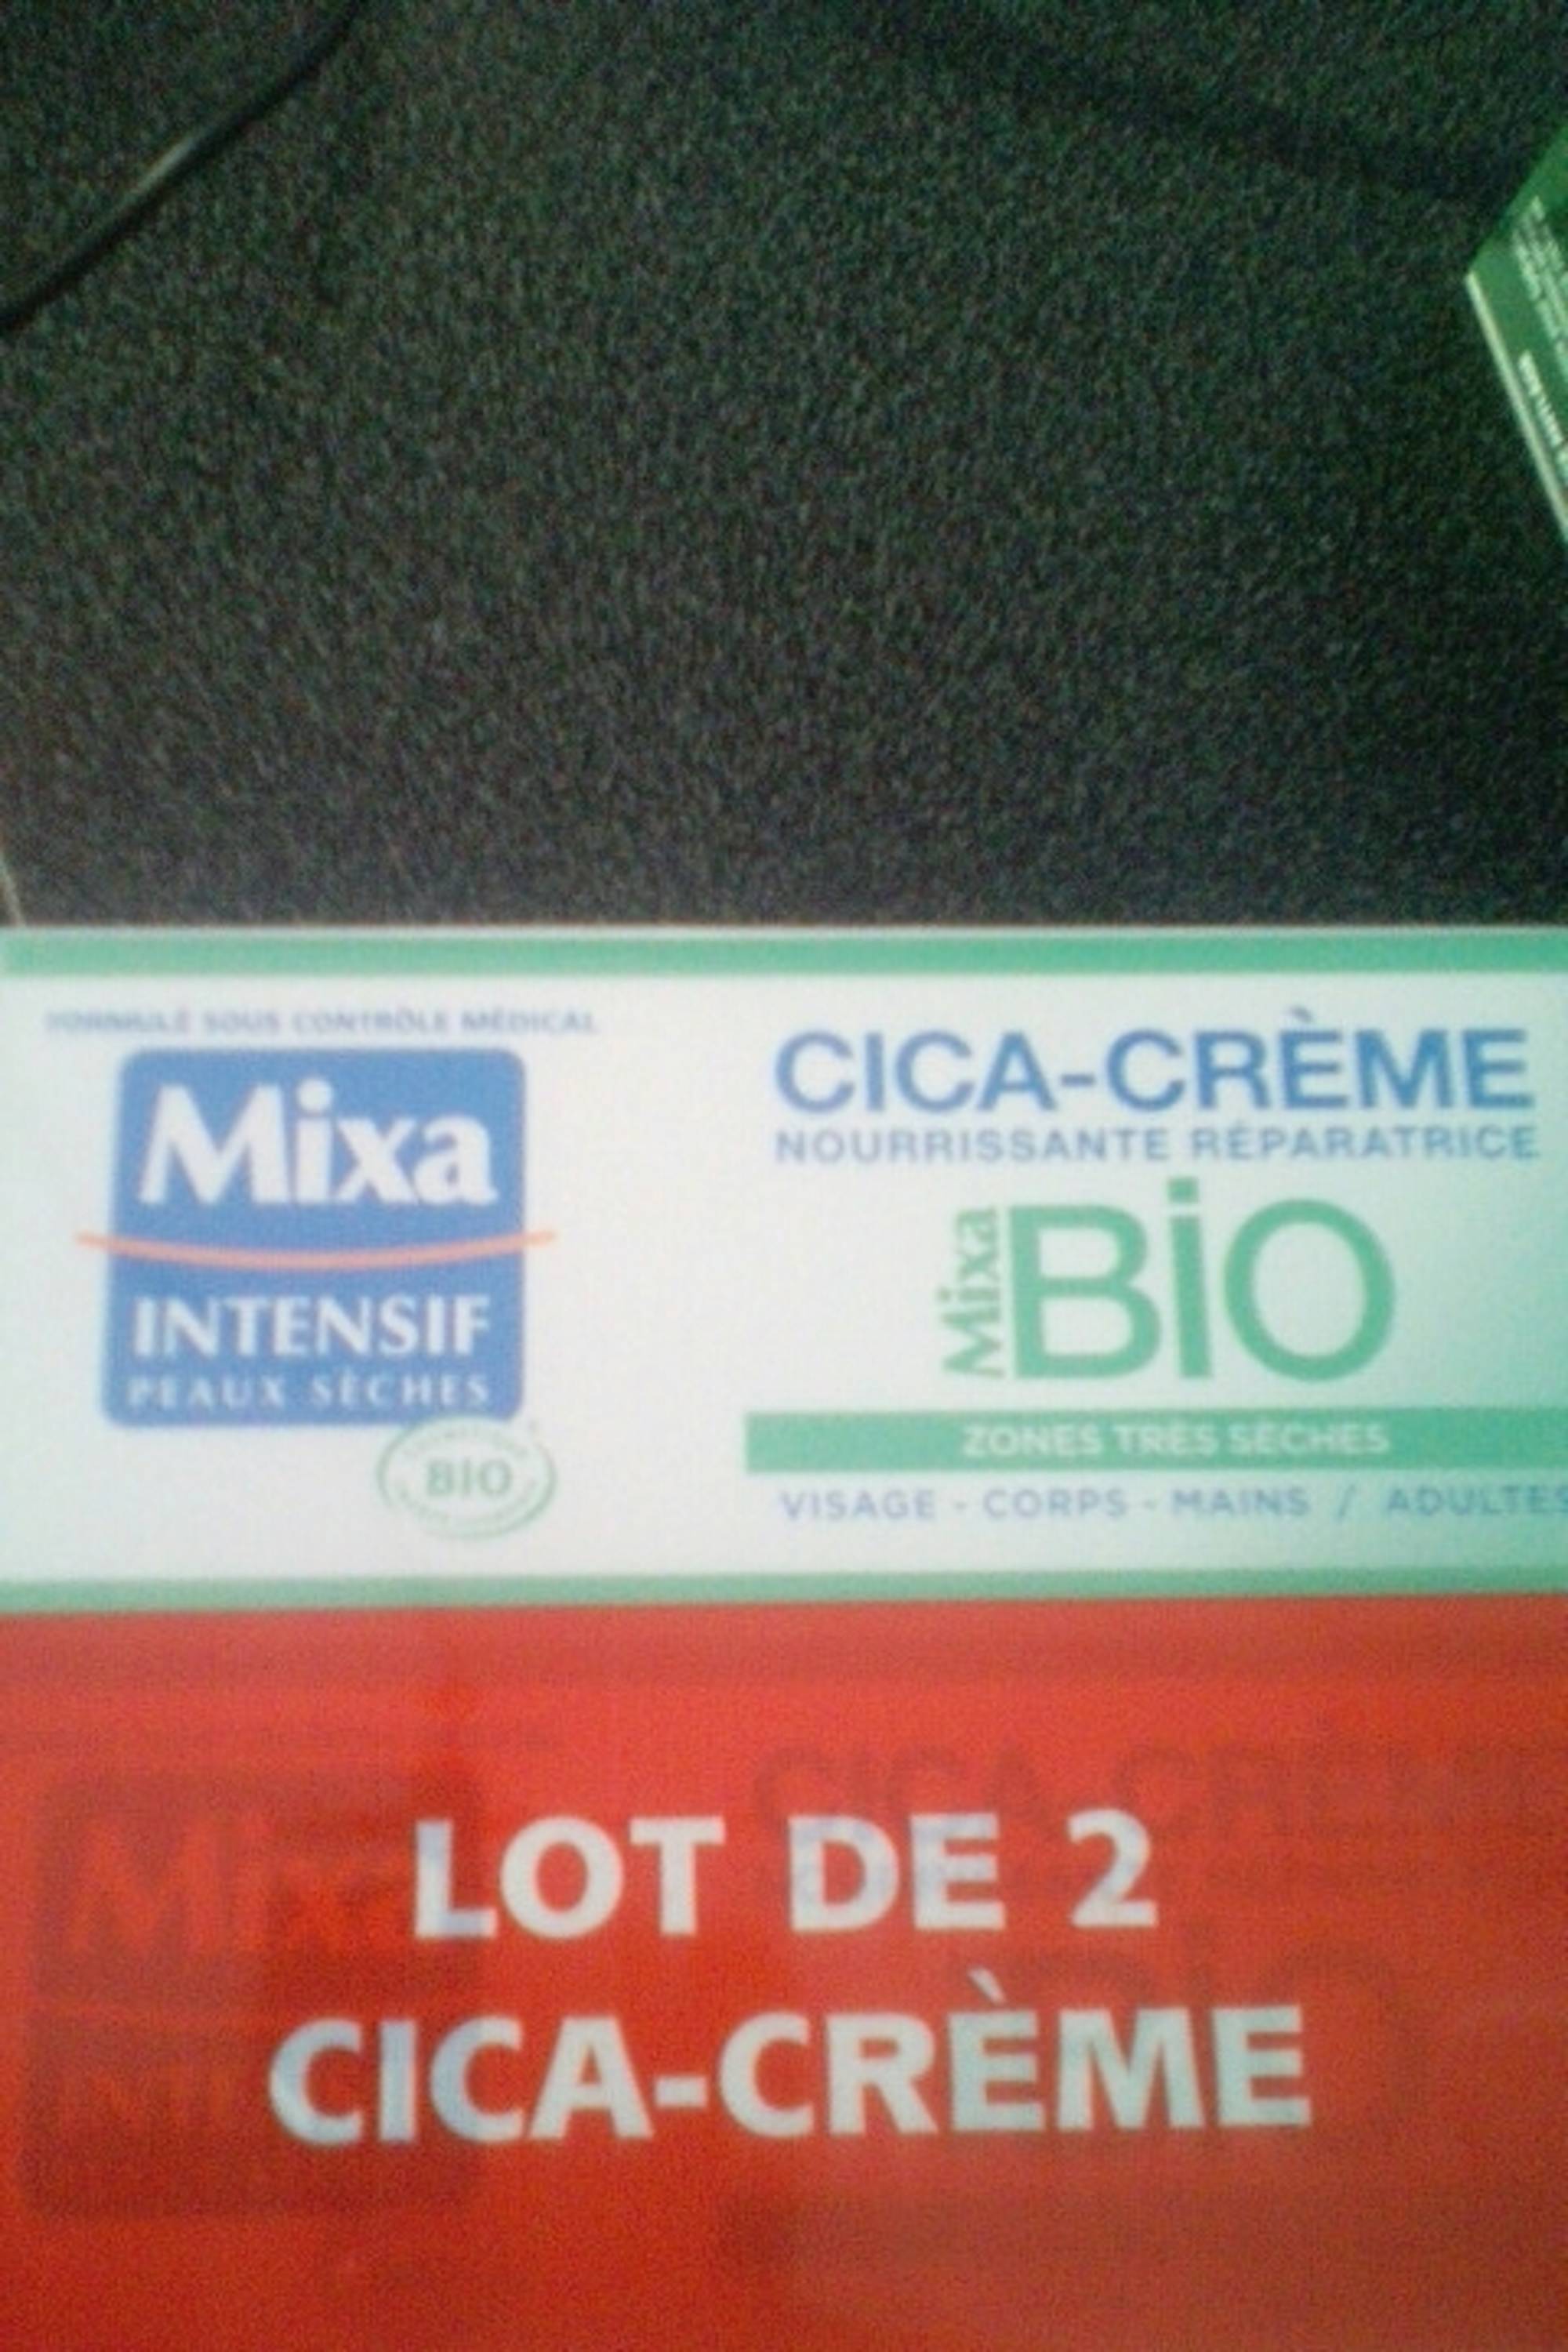 Composition MIXA Bio intensif peaux sèches - Cica-crème nourrissante  réparatrice - UFC-Que Choisir